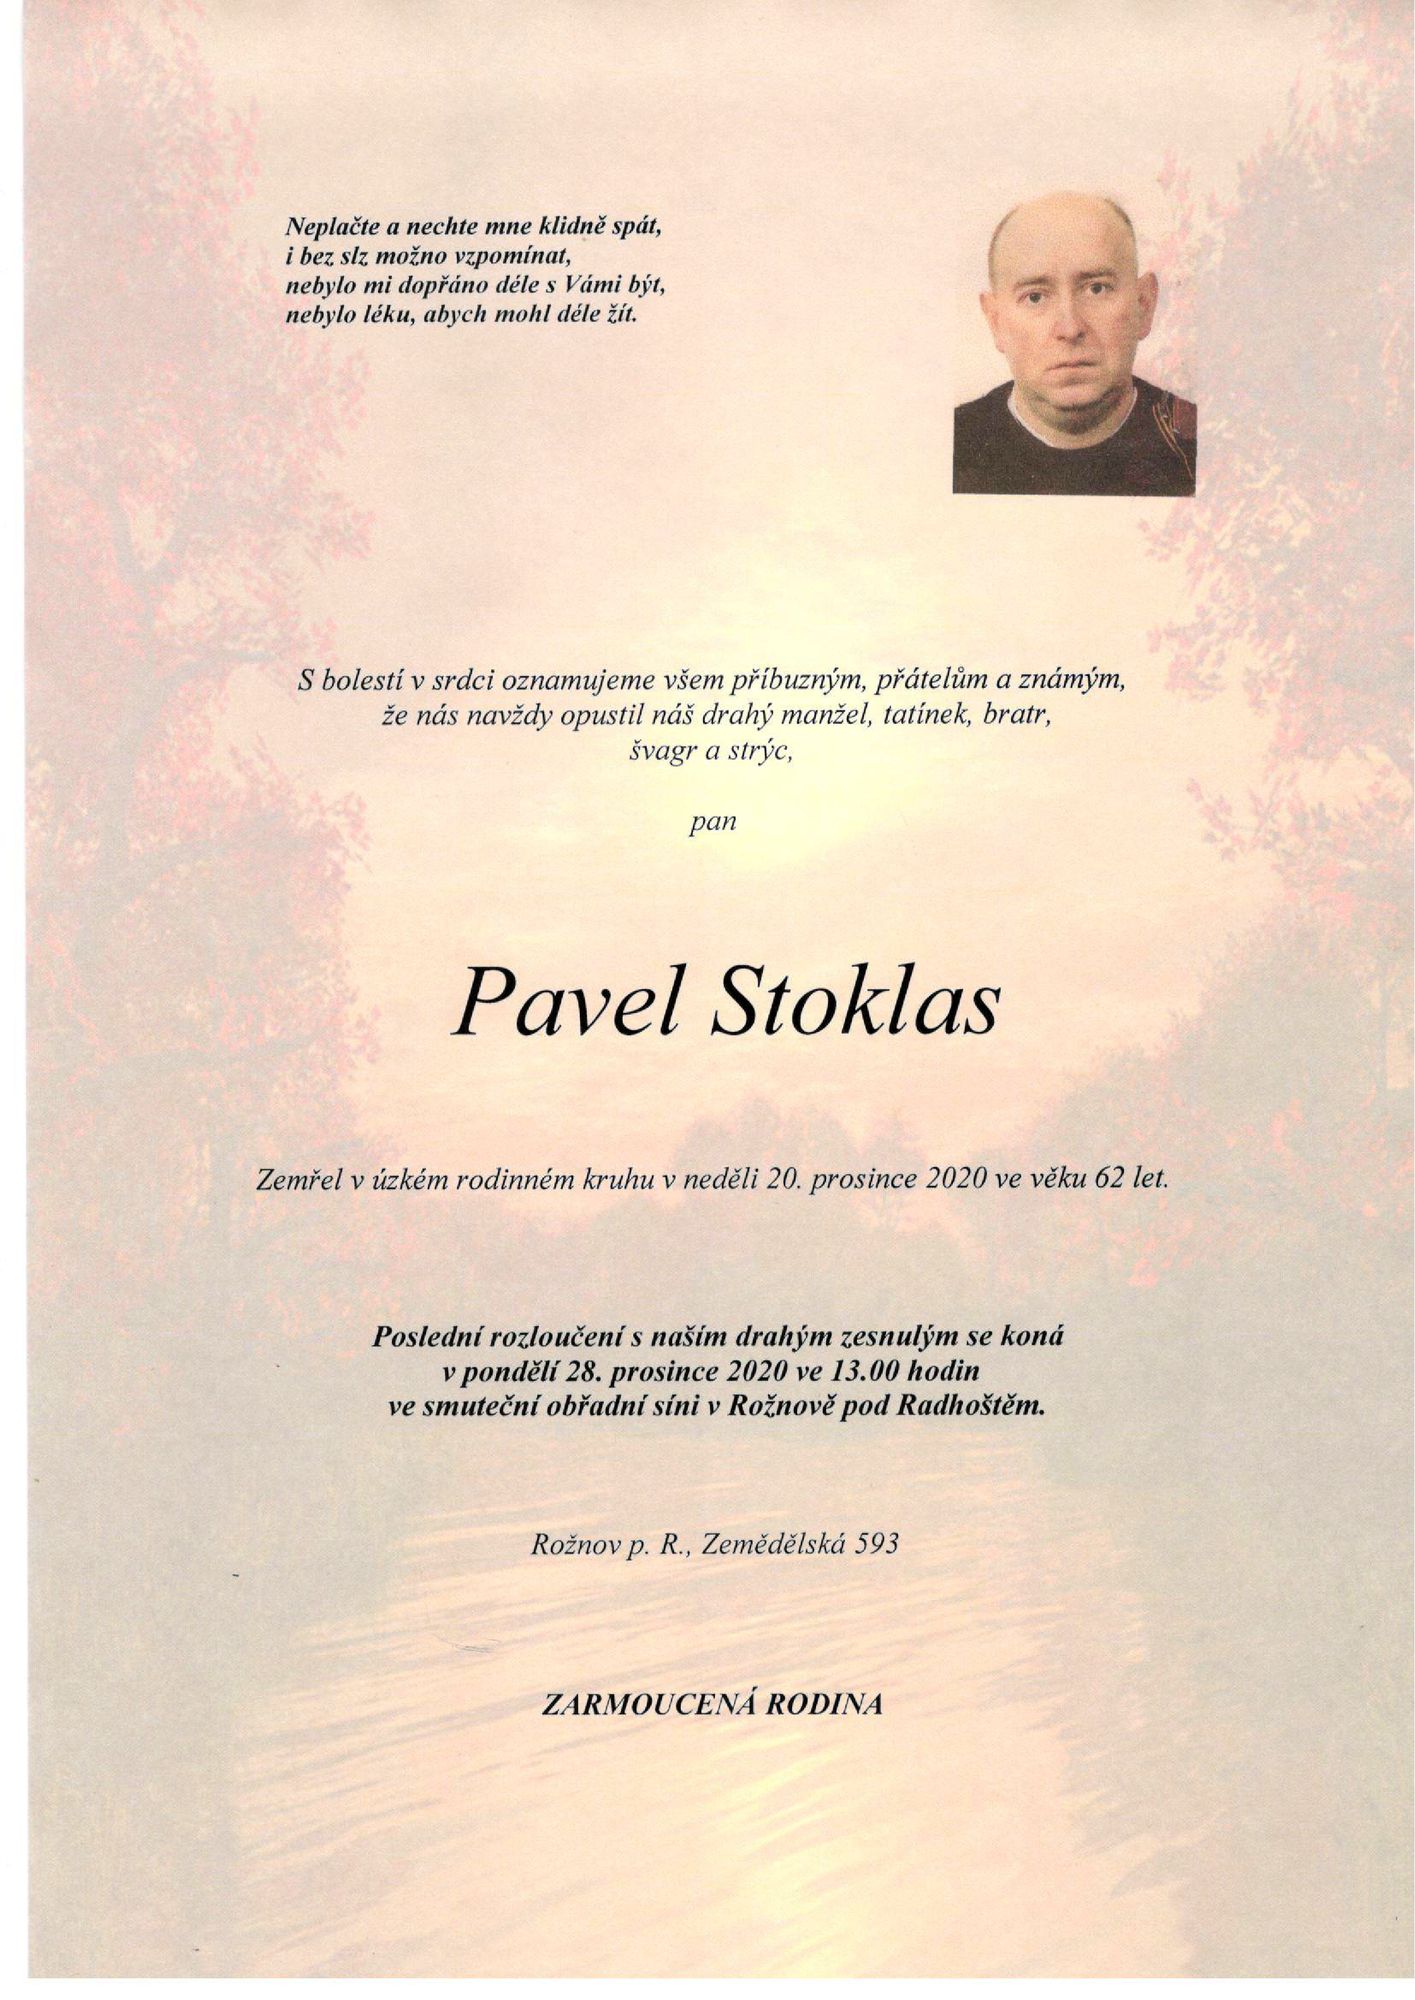 Pavel Stoklas